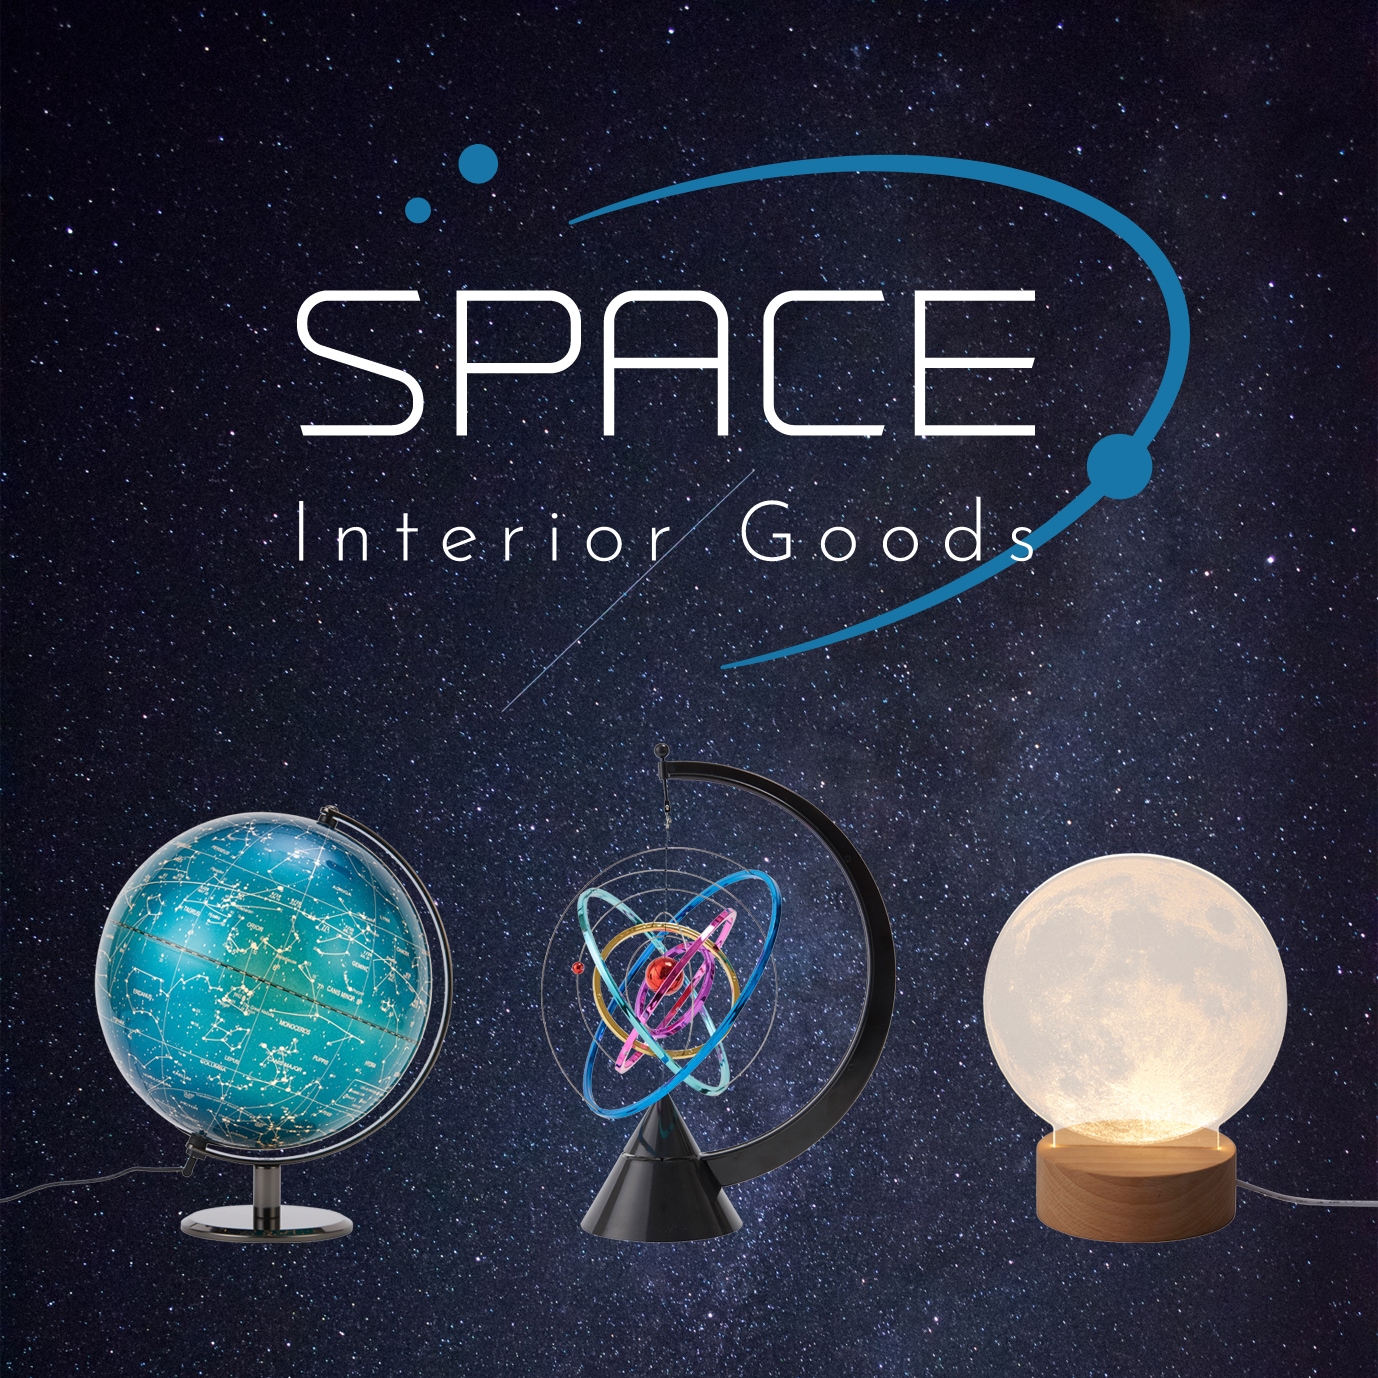 Space Interior Goods